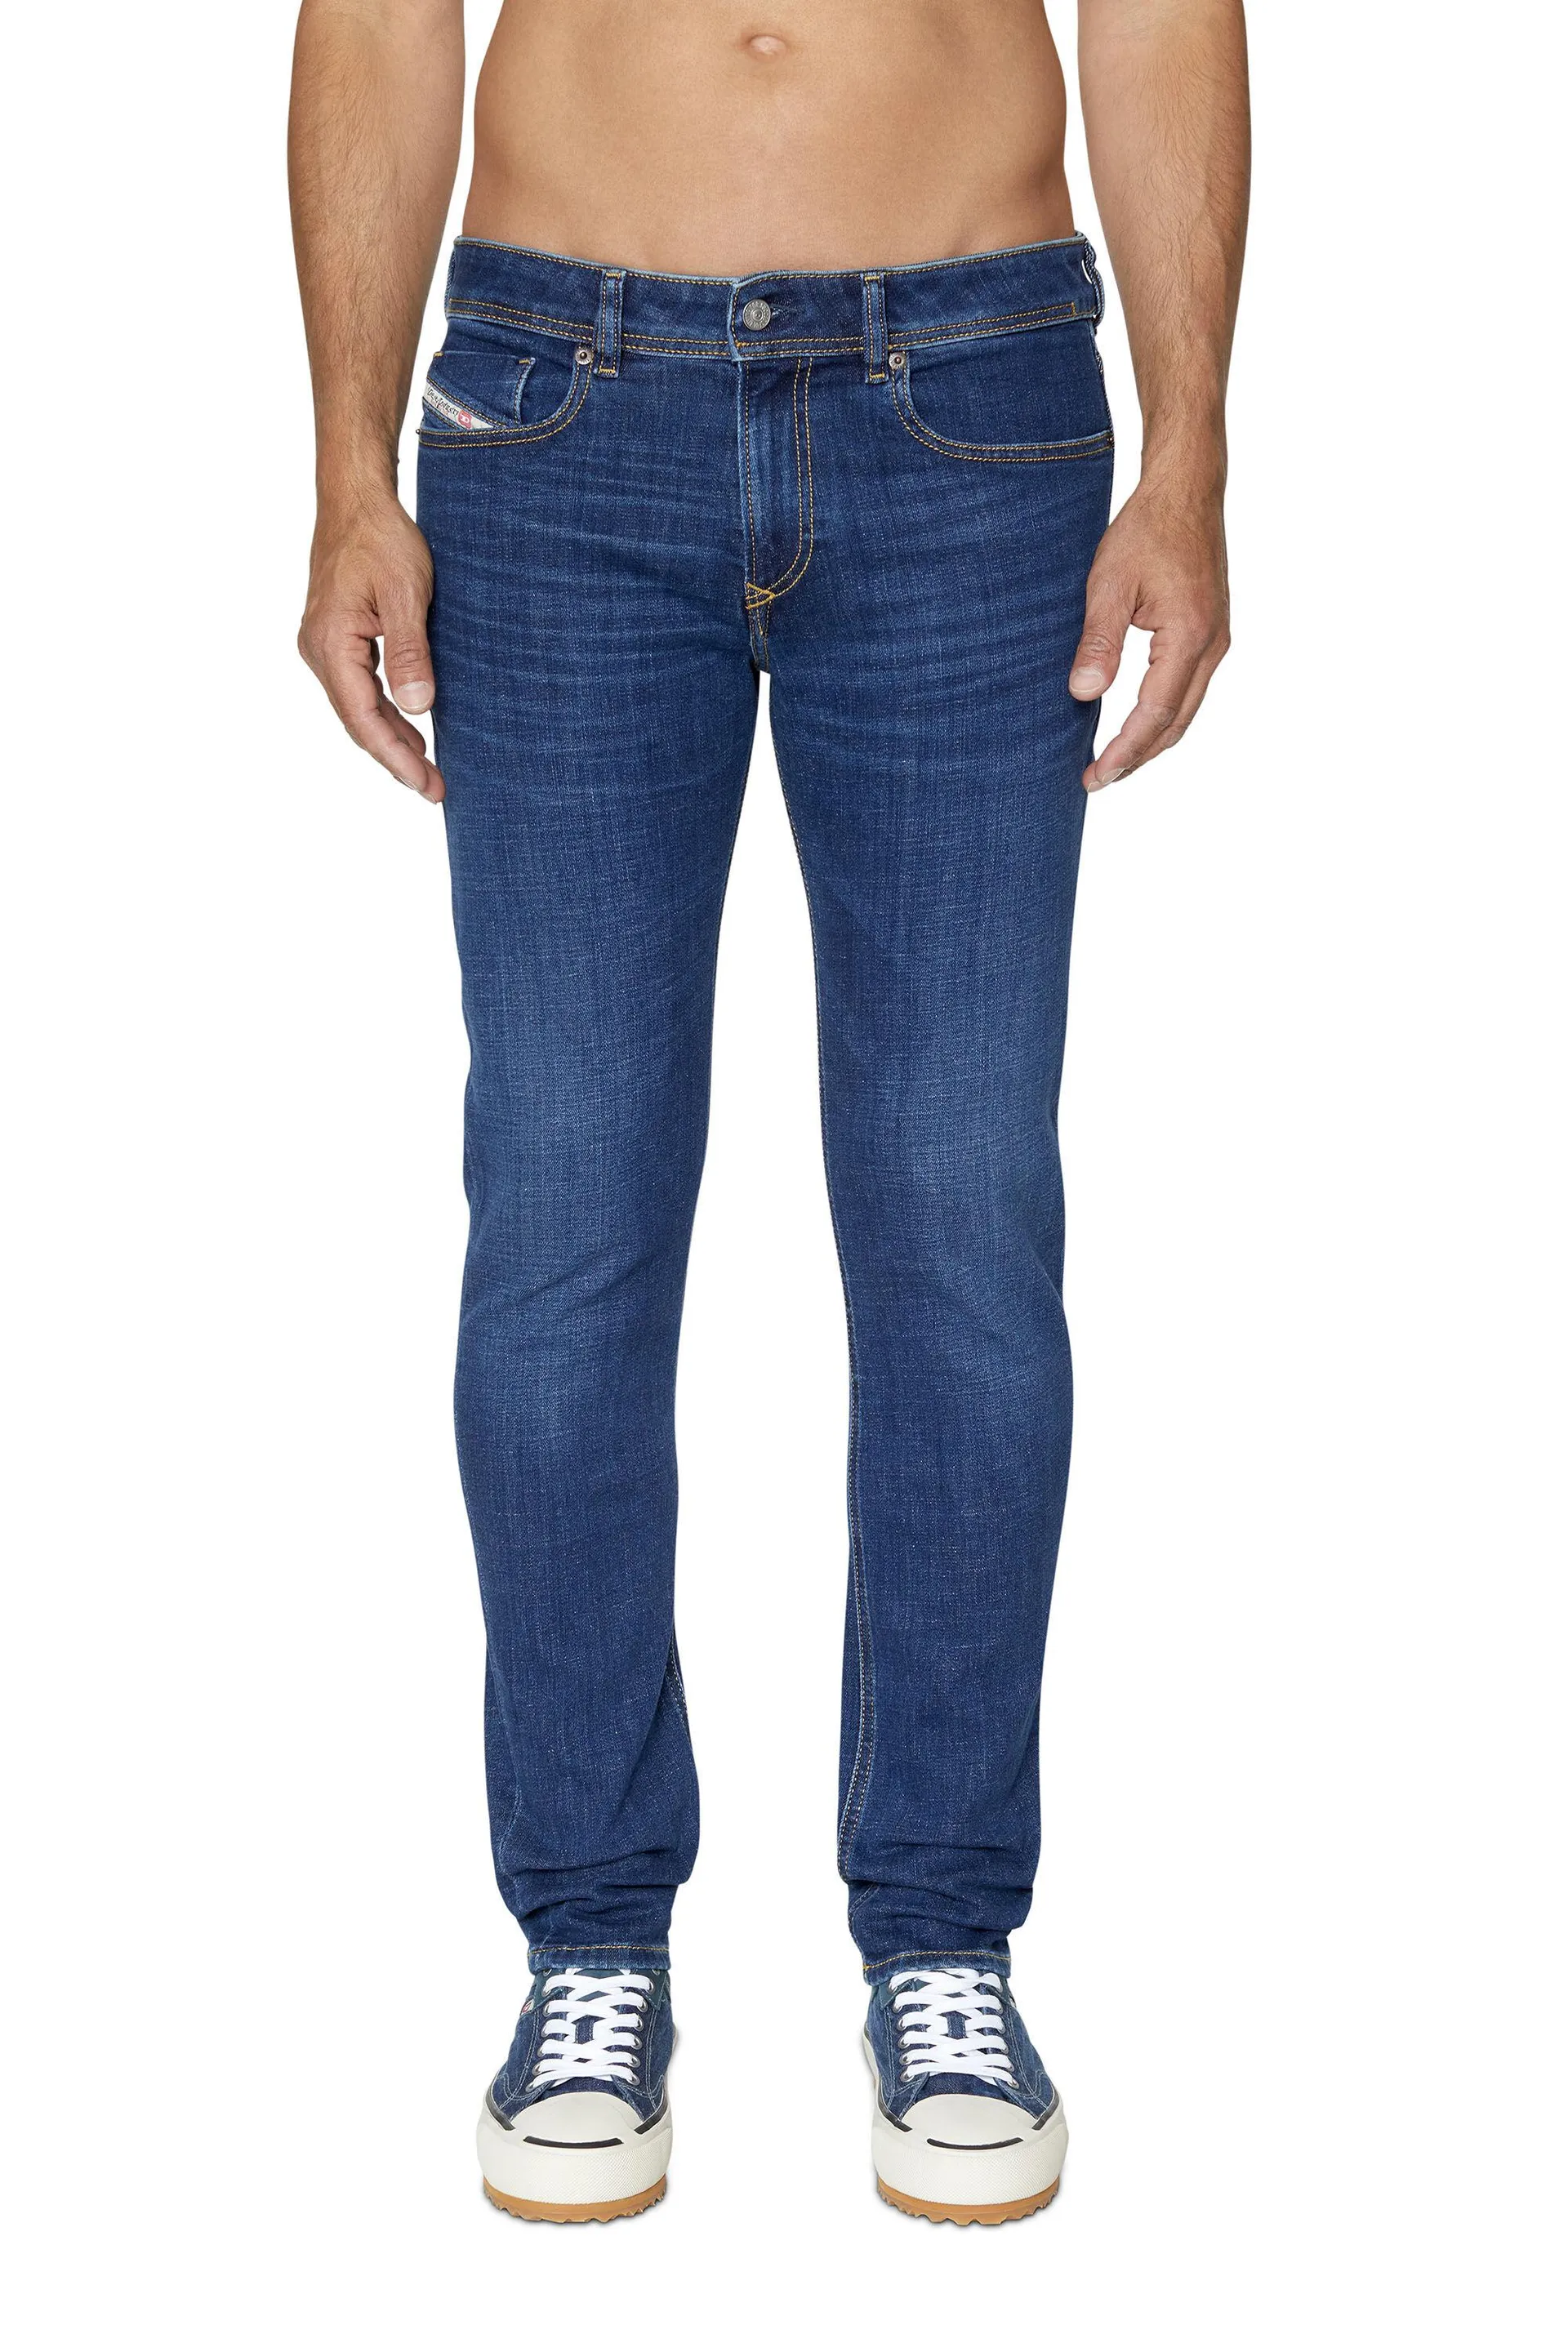 1979 sleenker 09b98 skinny jeans